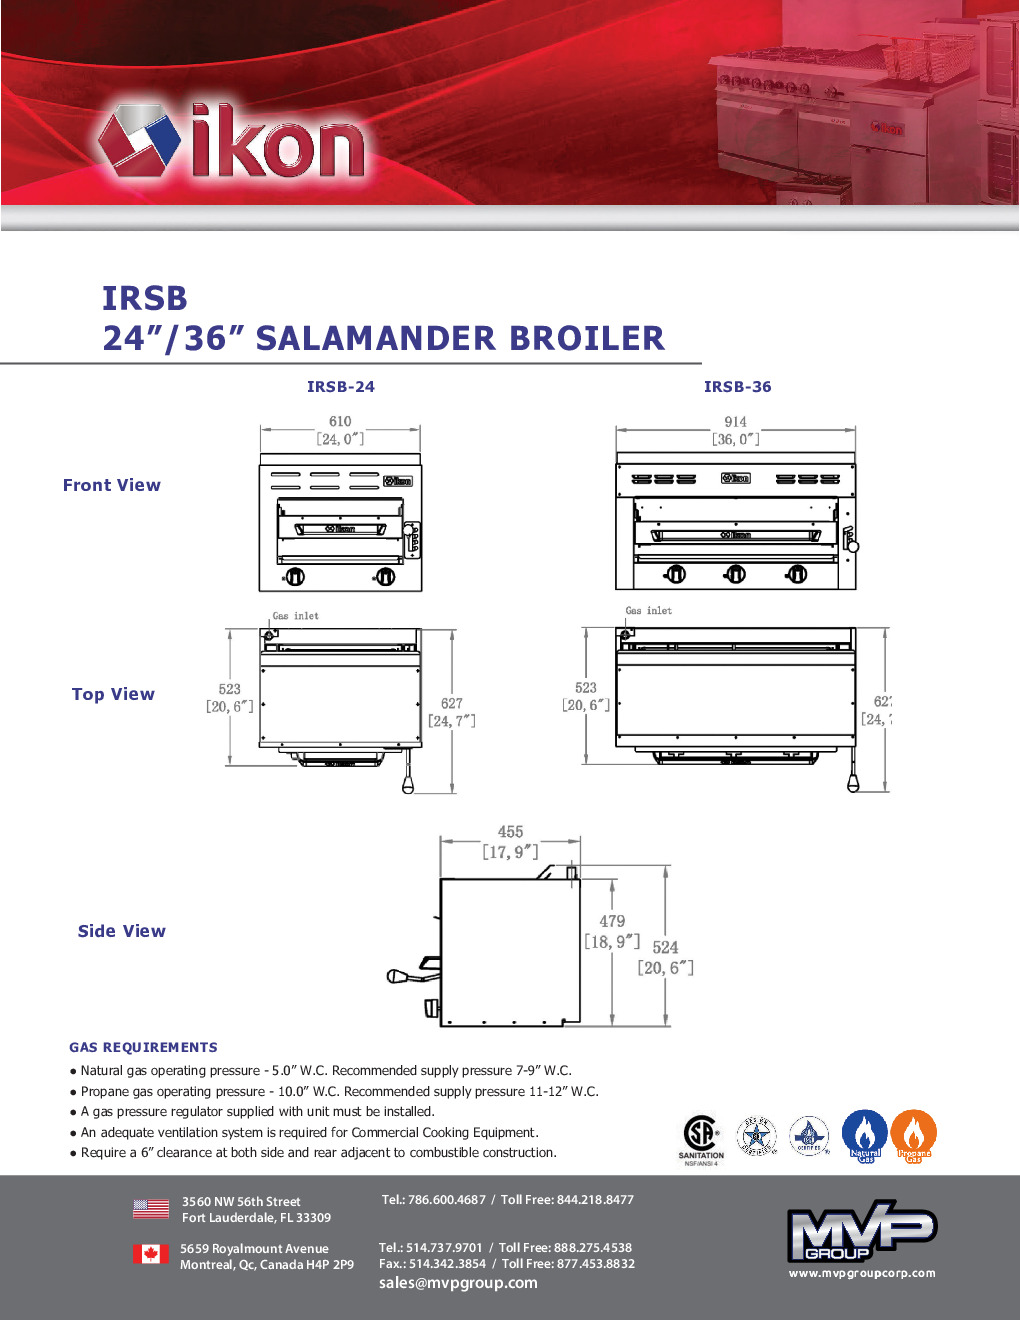 IKON IRSB-24 Gas Salamander Broiler